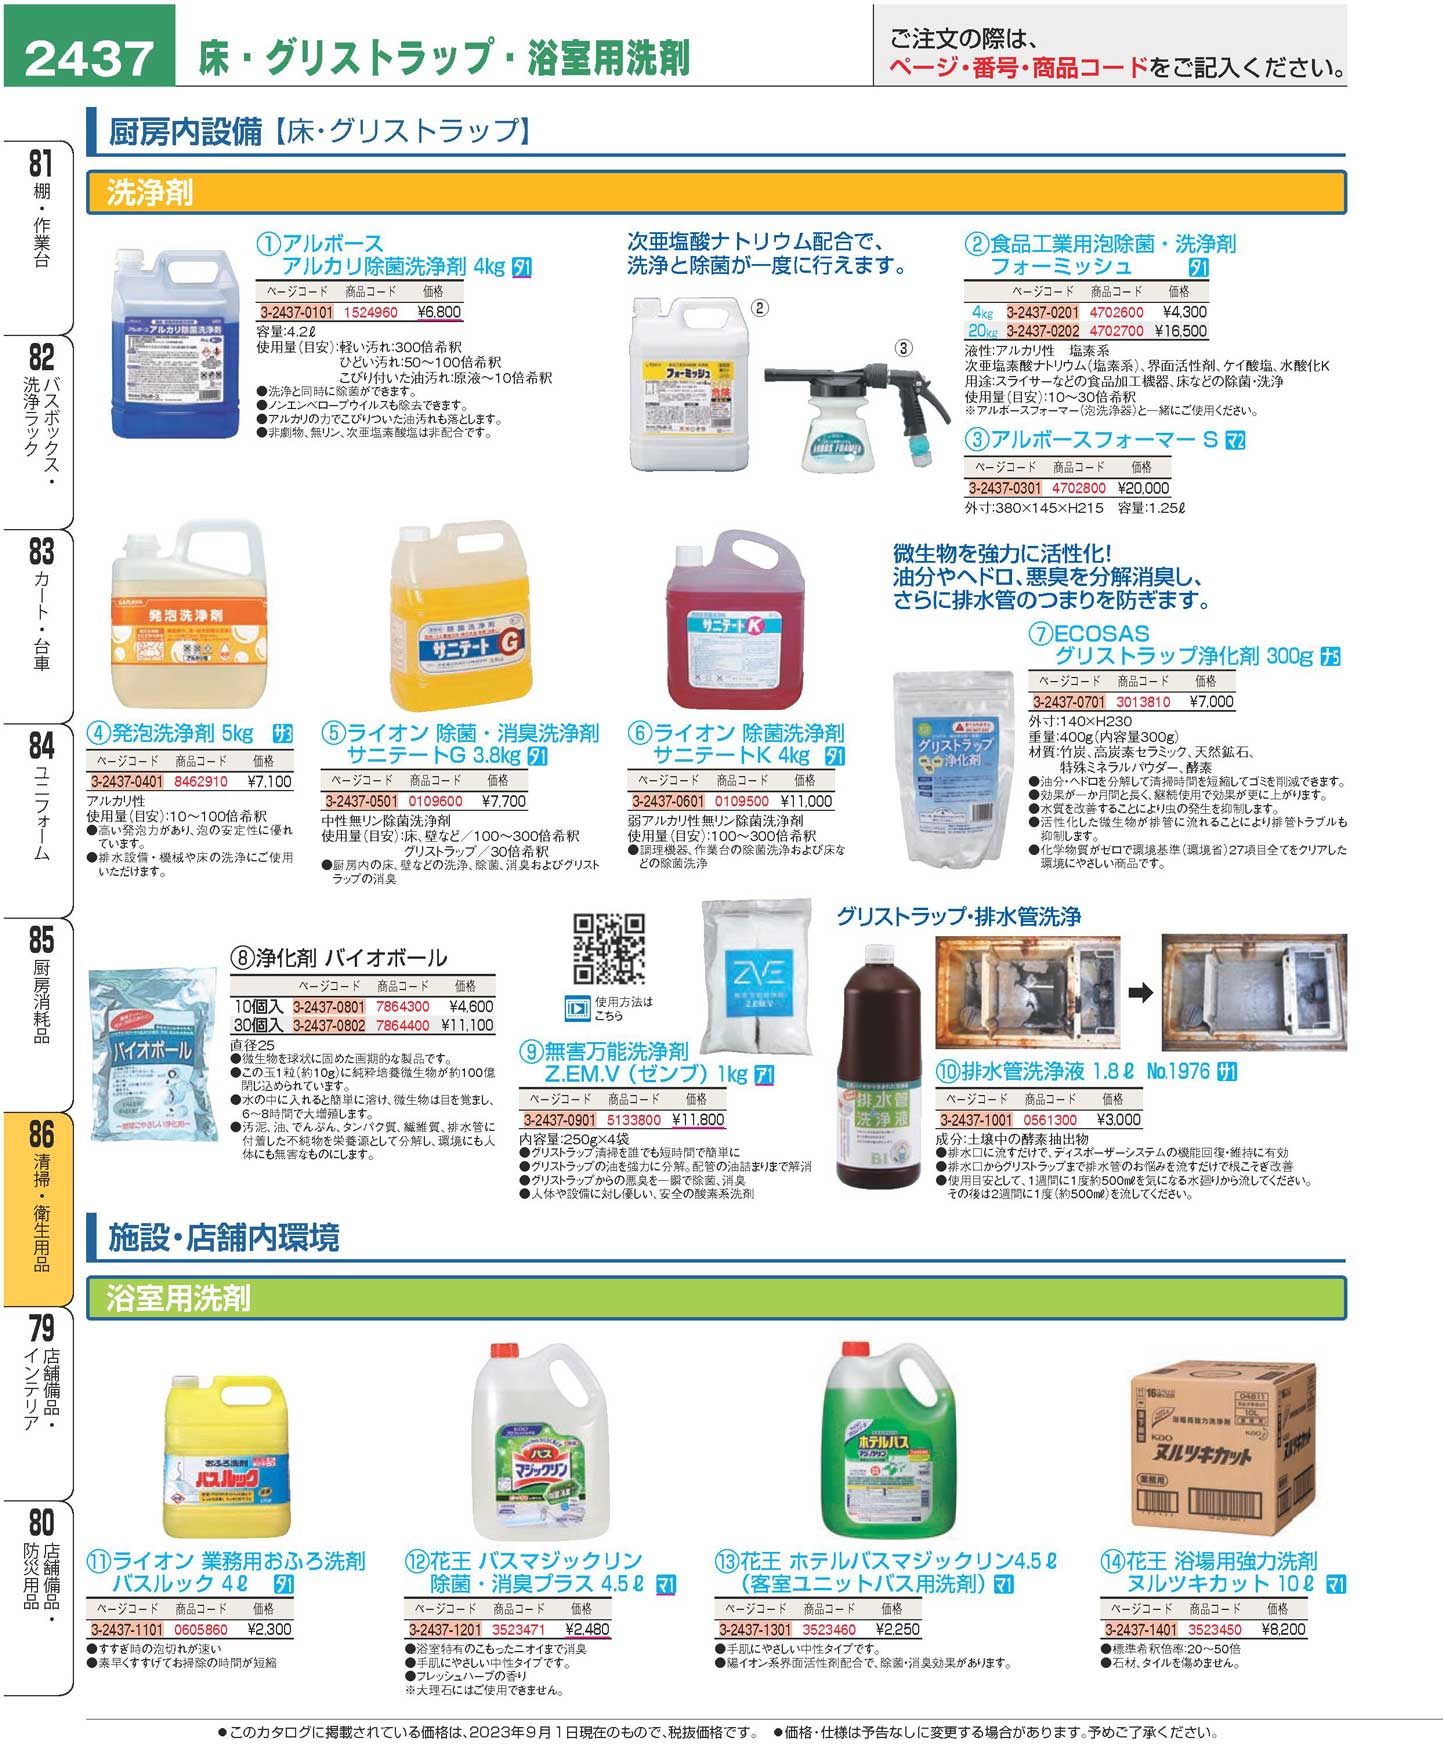 食器 床・グリストラップ・浴室用洗剤Cleaning utensils/Detergent